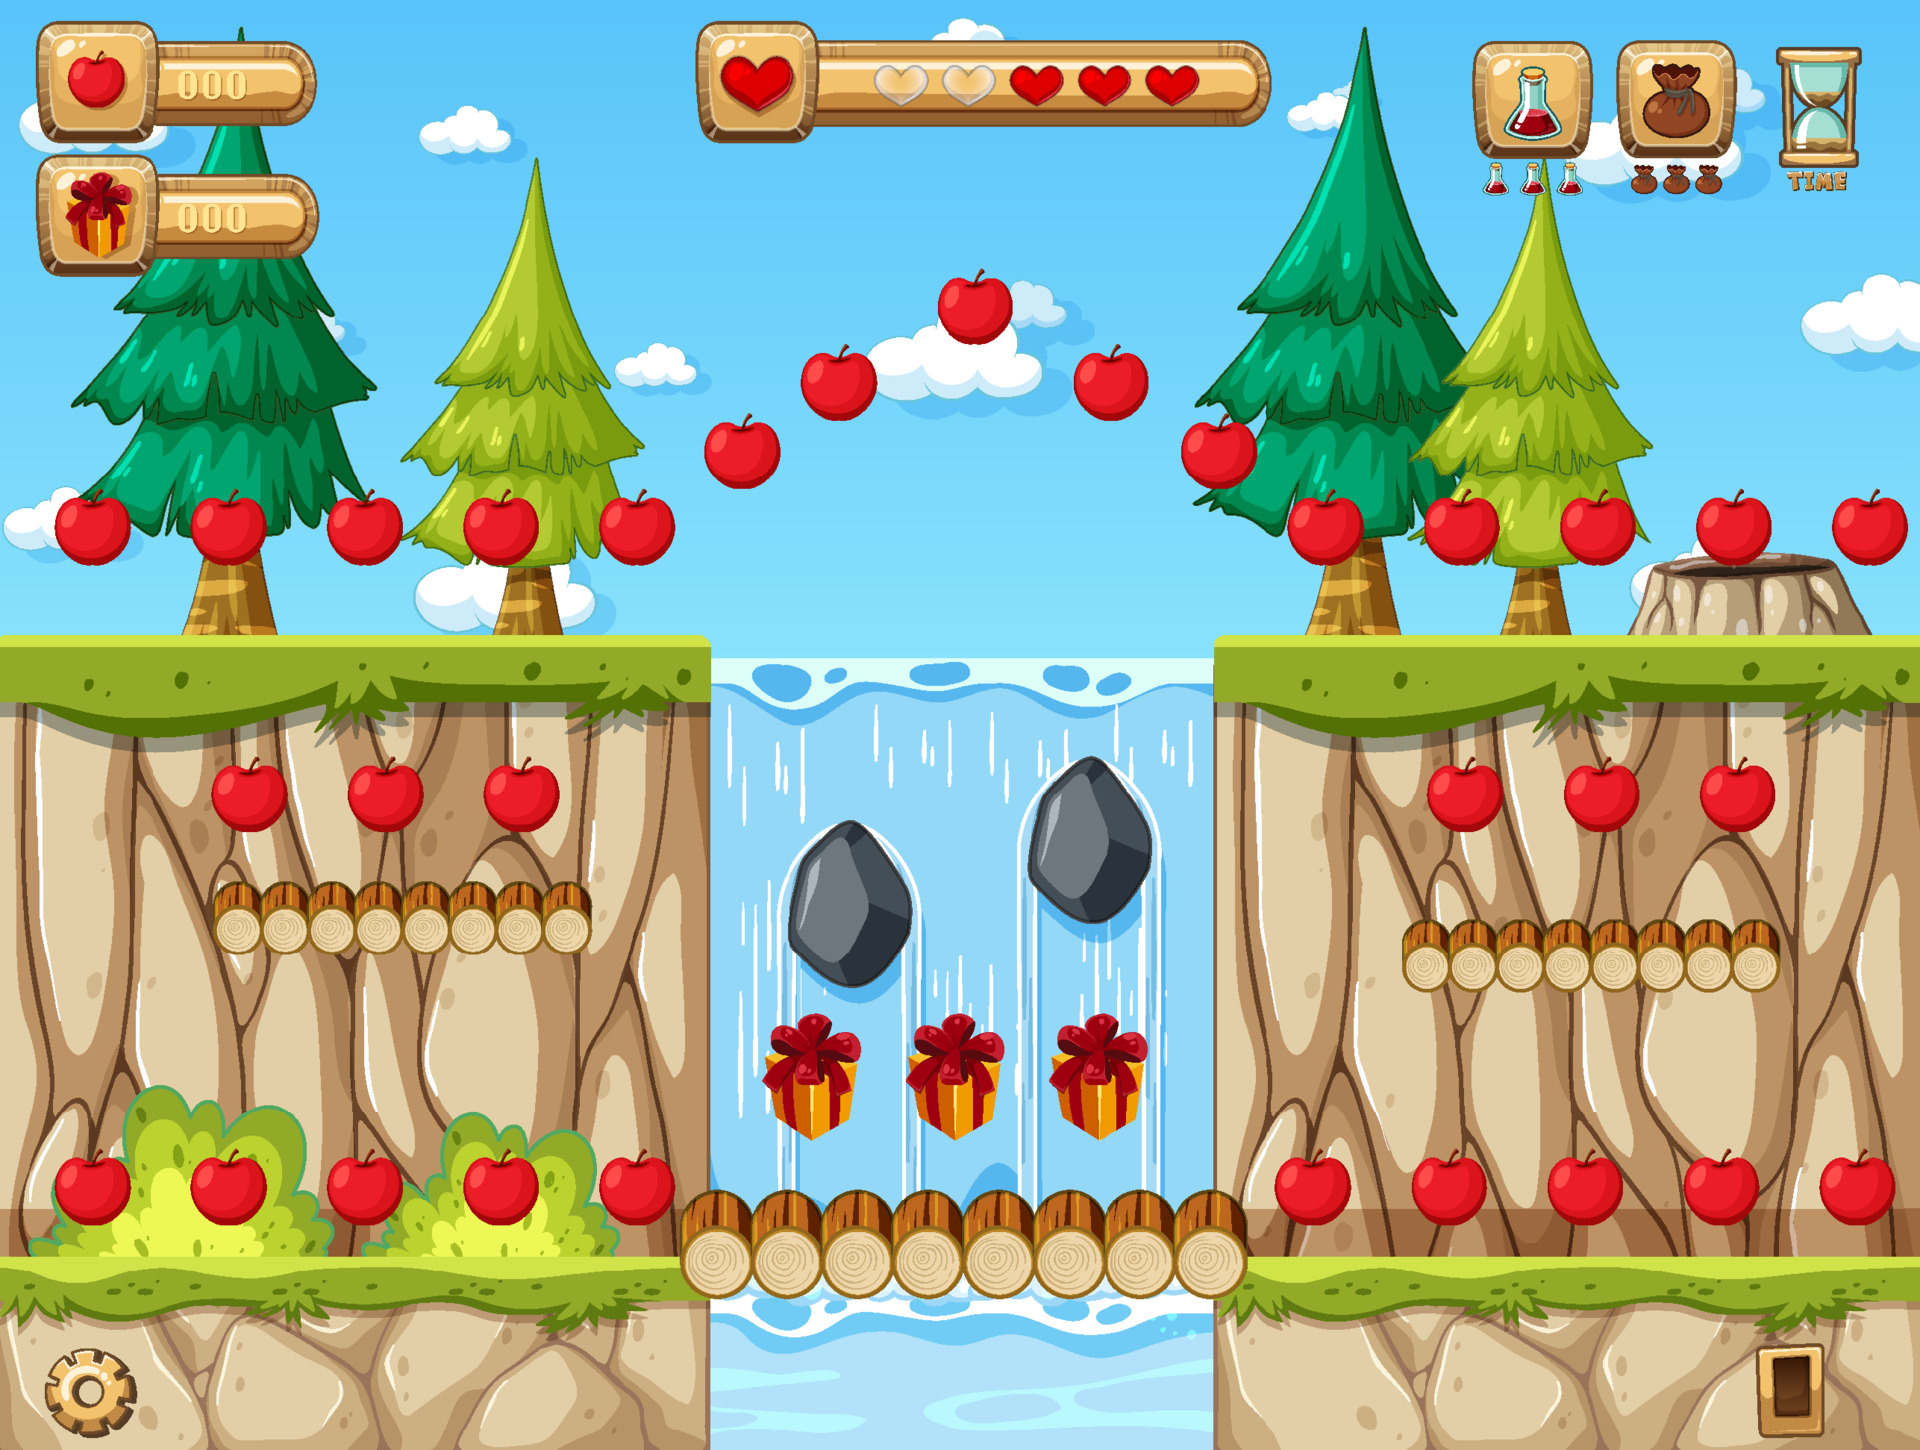 modelo de cena de jogo de plataforma com jogo de coleta de maçãs